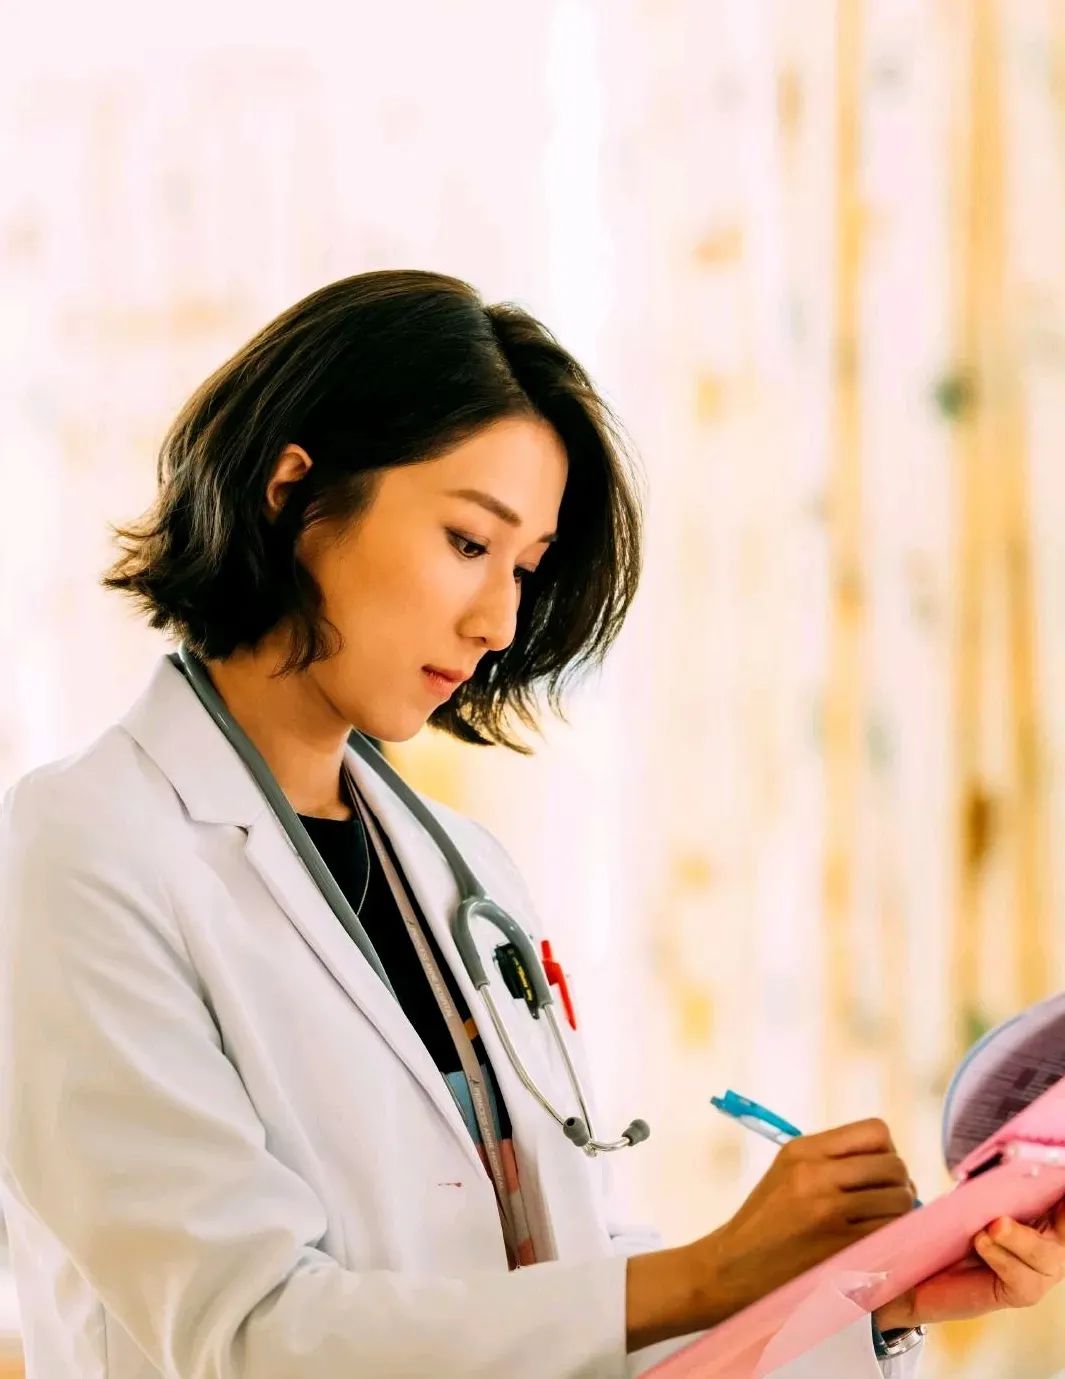 TVB新电视剧《星空下的仁医》、《换命真相》确定在台庆档播出，看看你喜欢哪一部？